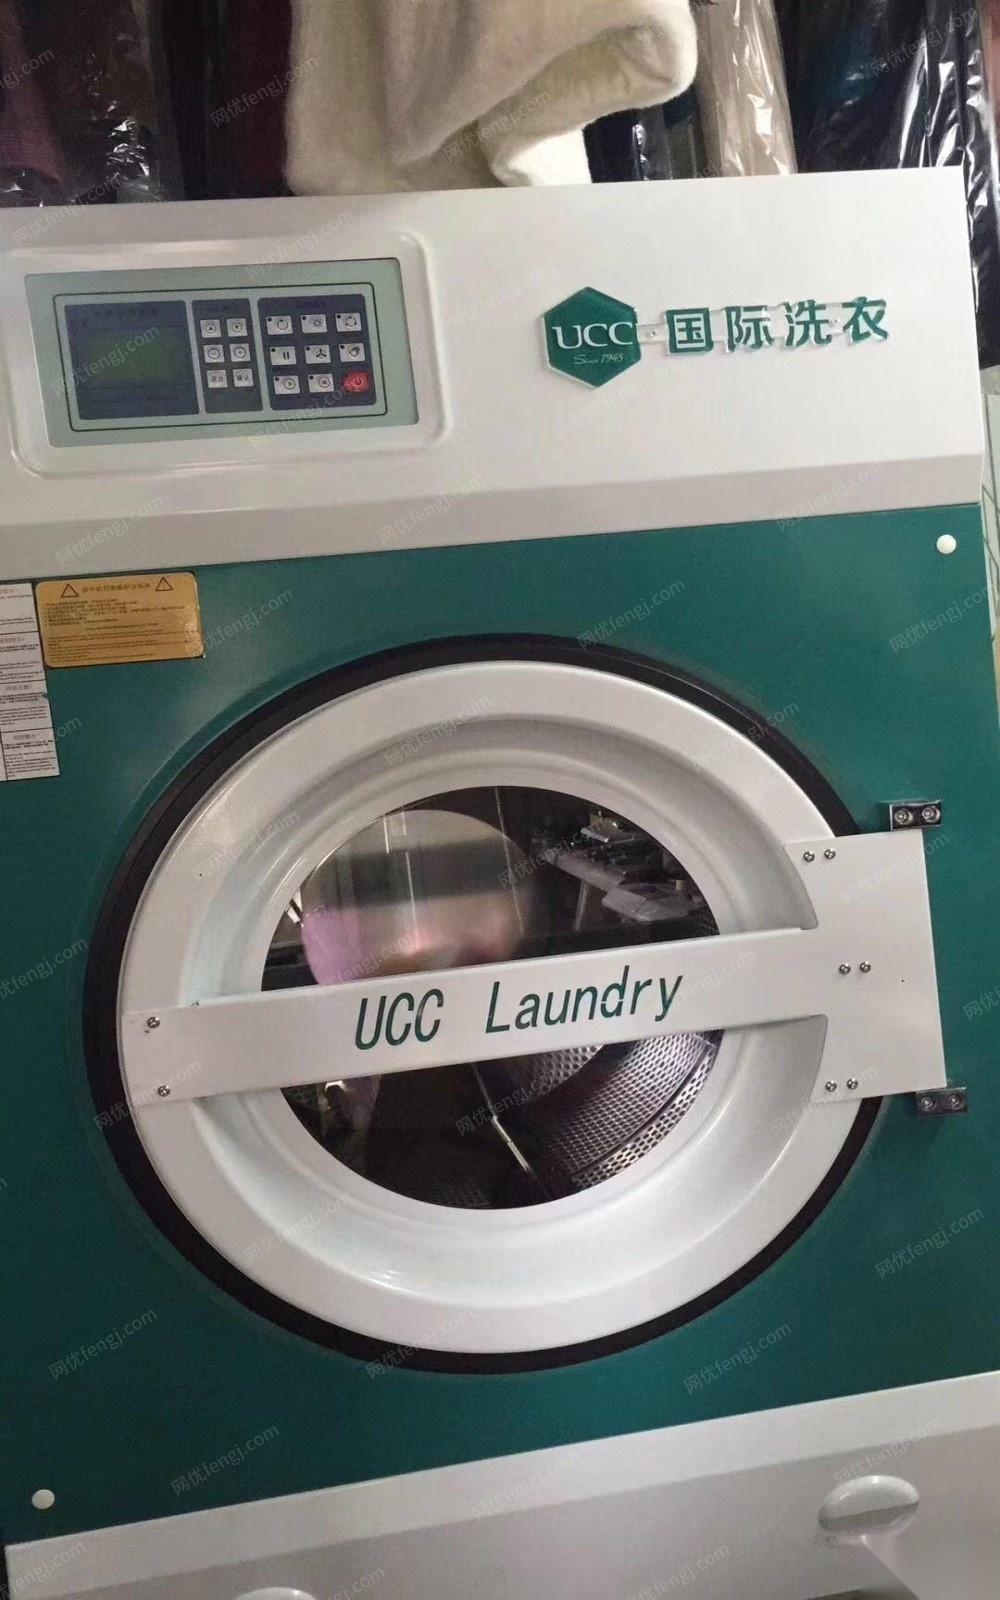 福建龙岩ucc国际洗衣设备9.5新出售，现在是洗衣旺季，接手赚钱，